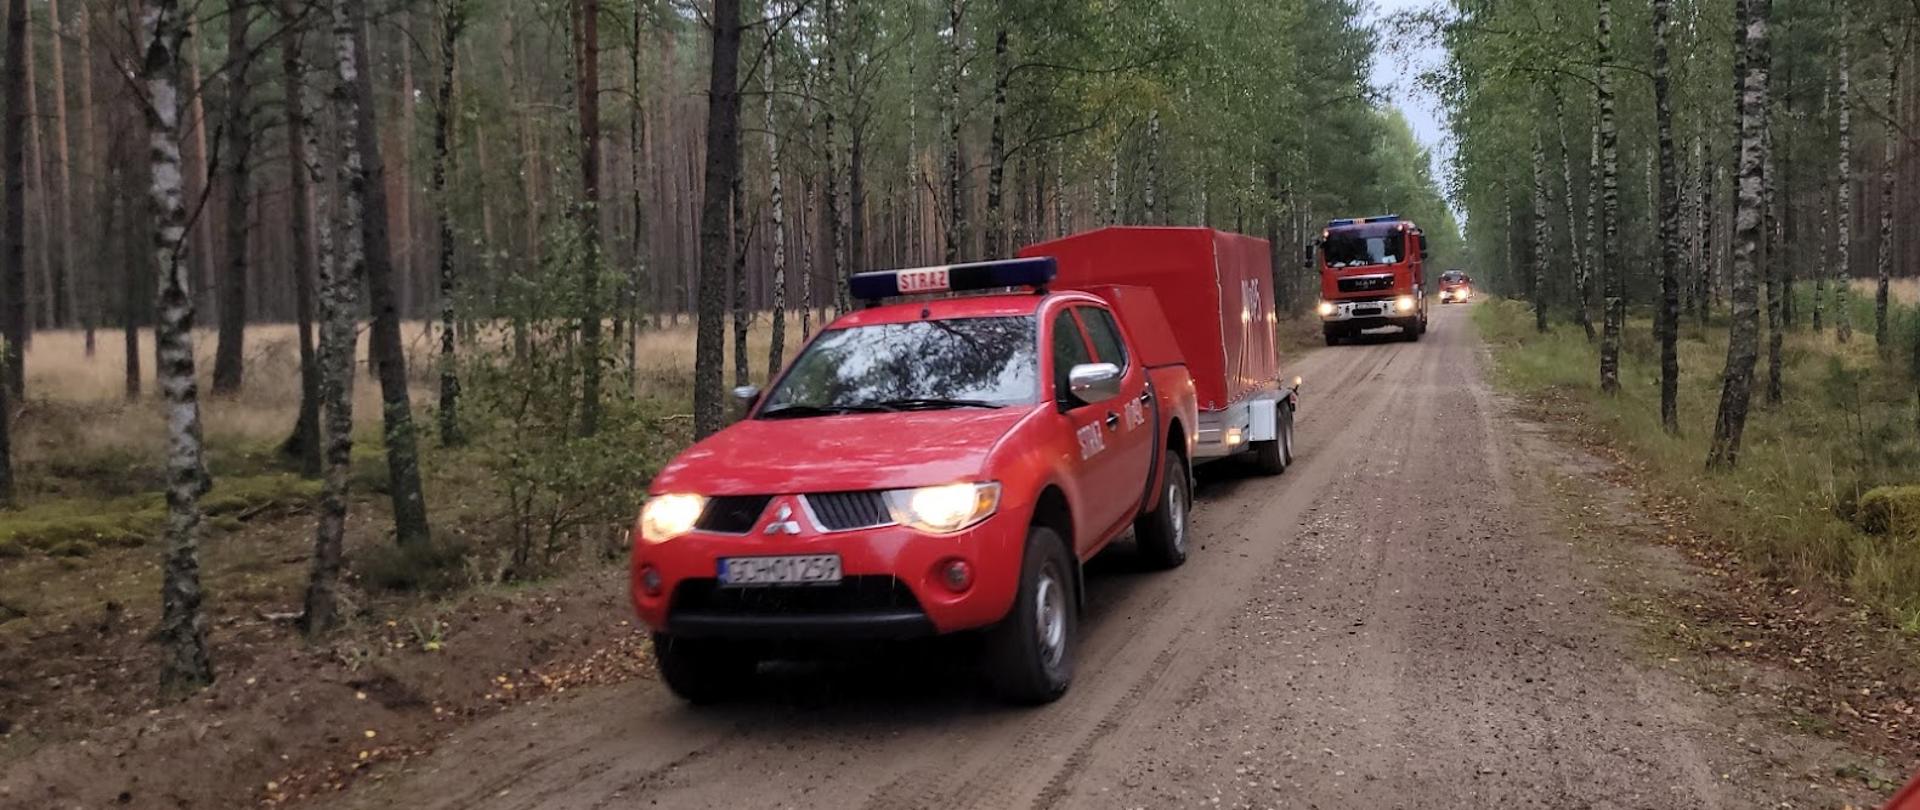 Doga leśna, drogą poruszają się samochody strażackie. Na pierwszym planie samochód typu pickup ciągnie przyczepkę sprzętową. W tle większy samochód strażacki. 